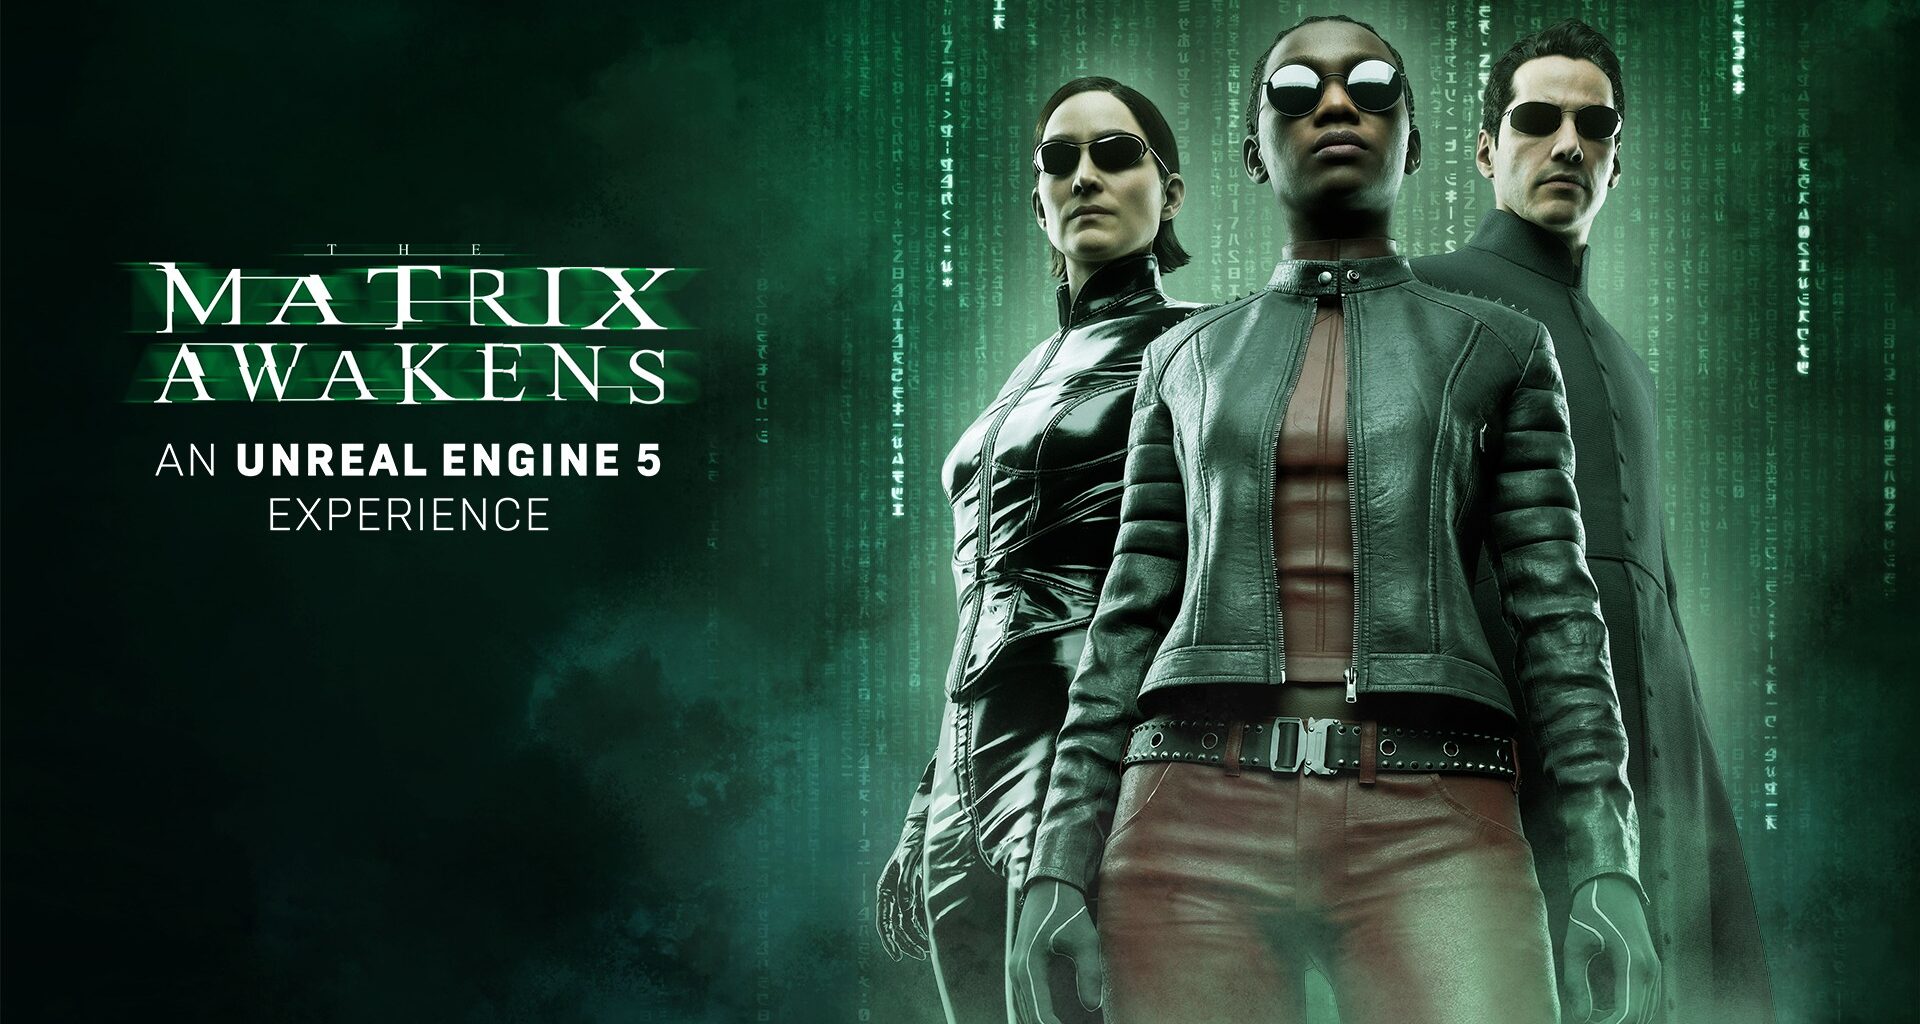 REVIEW: The Matrix Awakens é uma peça publicitária certeira